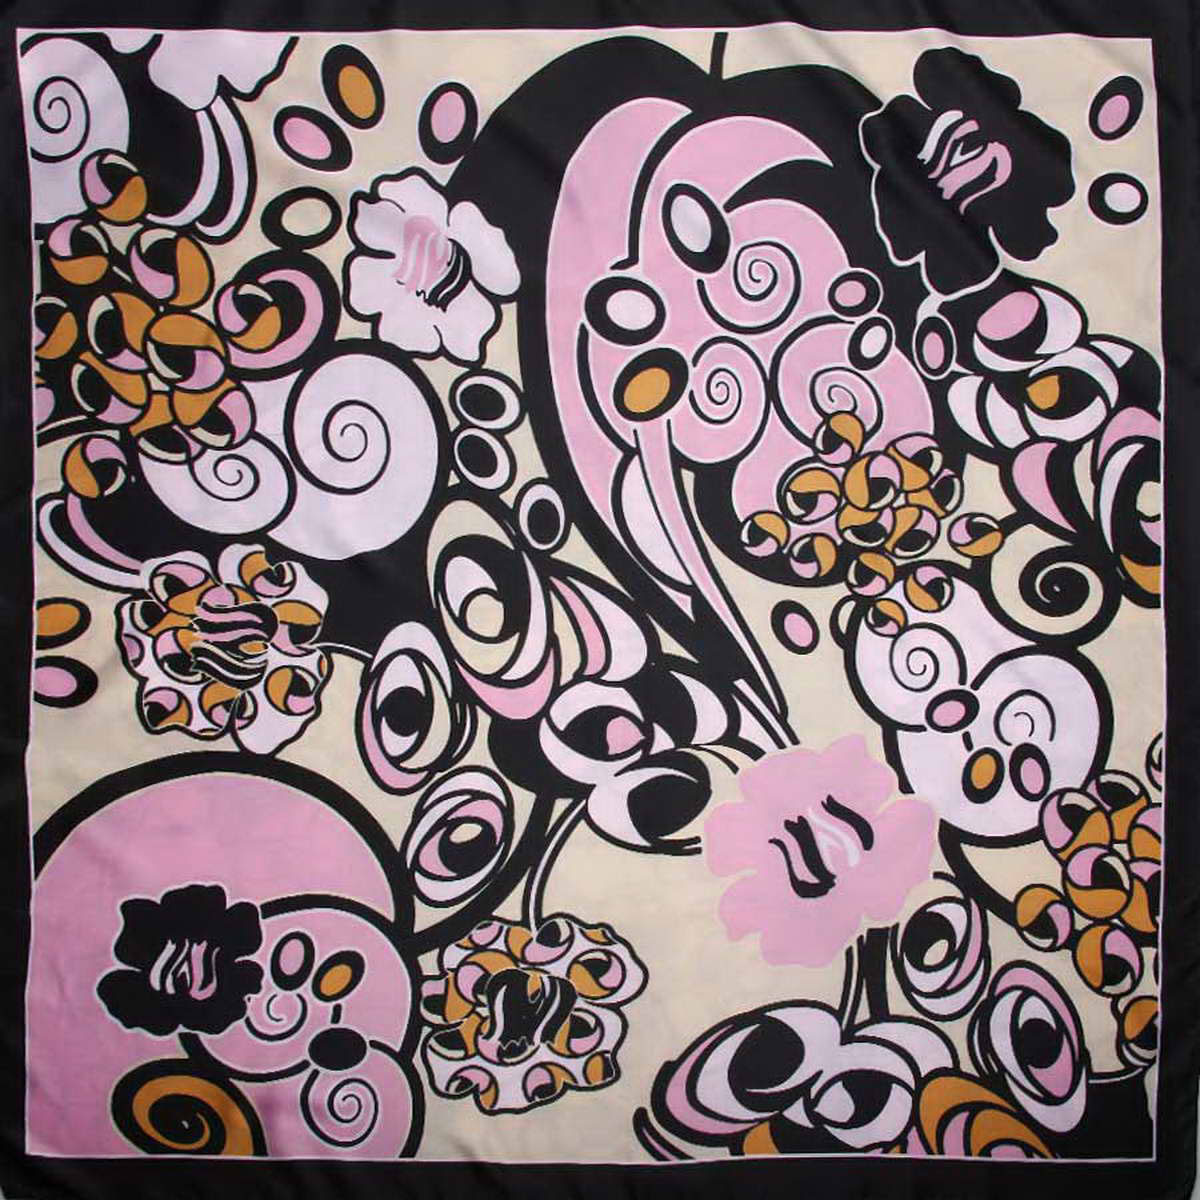 Платок женский Venera, цвет: черный, бежевый, розовый. 3915183-11. Размер 90 см х 90 см